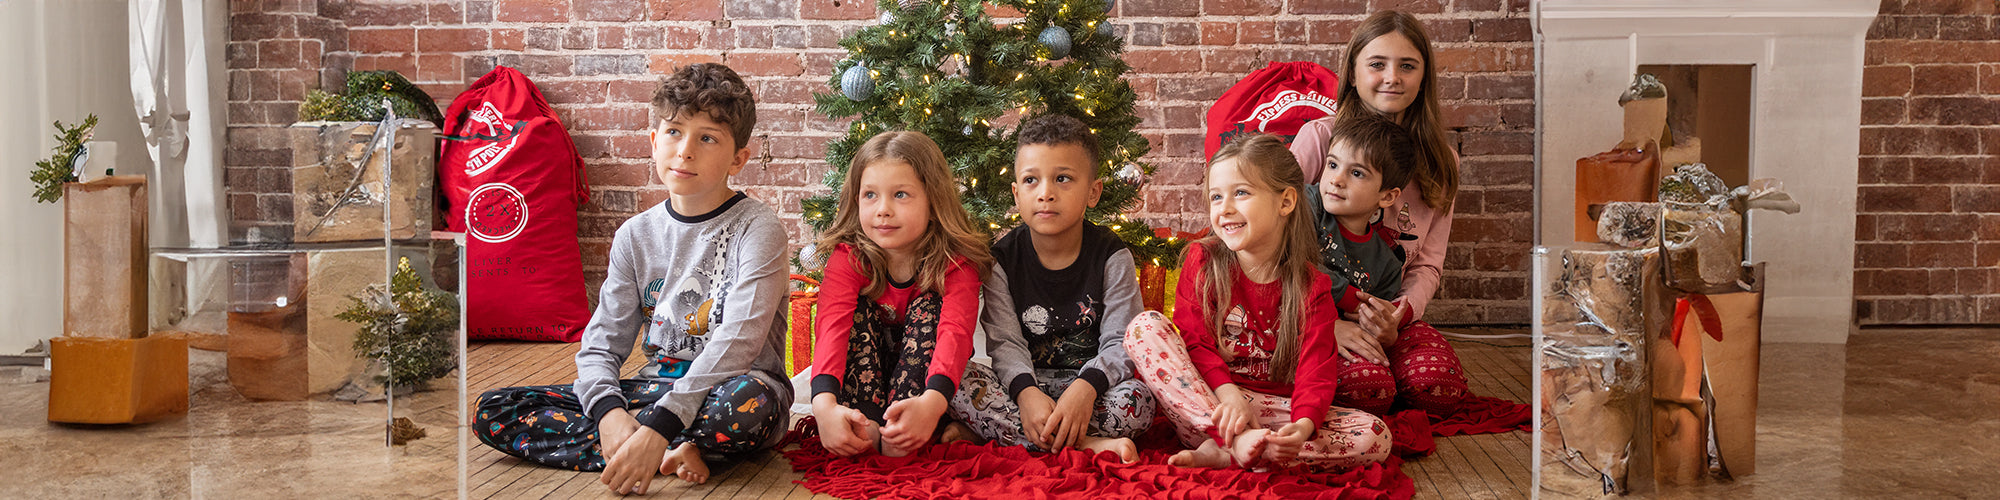 Des enfants devant l'arbre de noel avec des pyjams de noel et du temps des fêtes